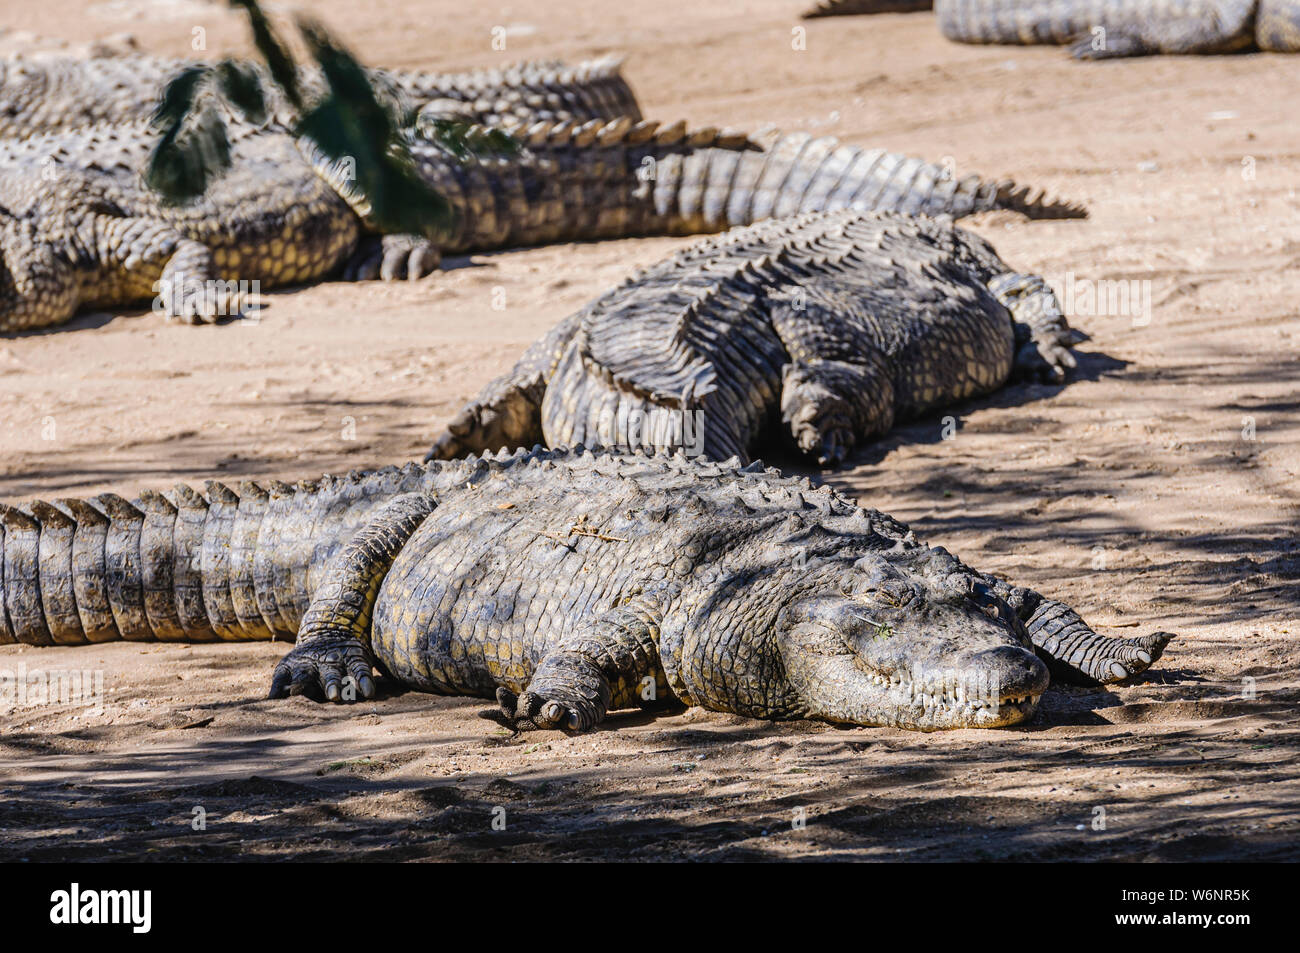 De nombreux crocodiles du Nil (Crocodylus niloticus) soleil au bord de la banque d'une rivière de sable. Banque D'Images